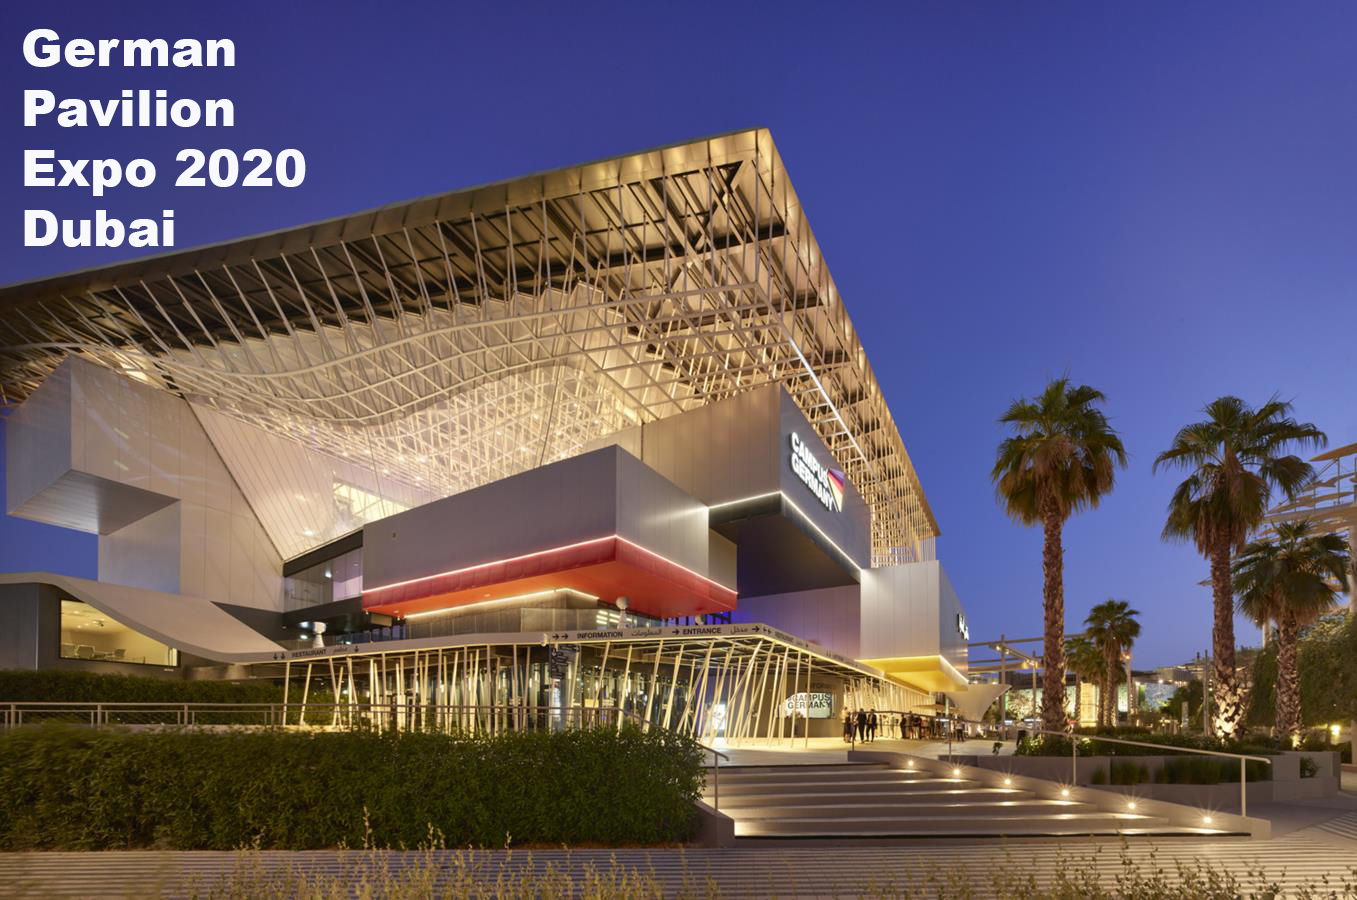 German Pavilion Expo 2020 Dubai